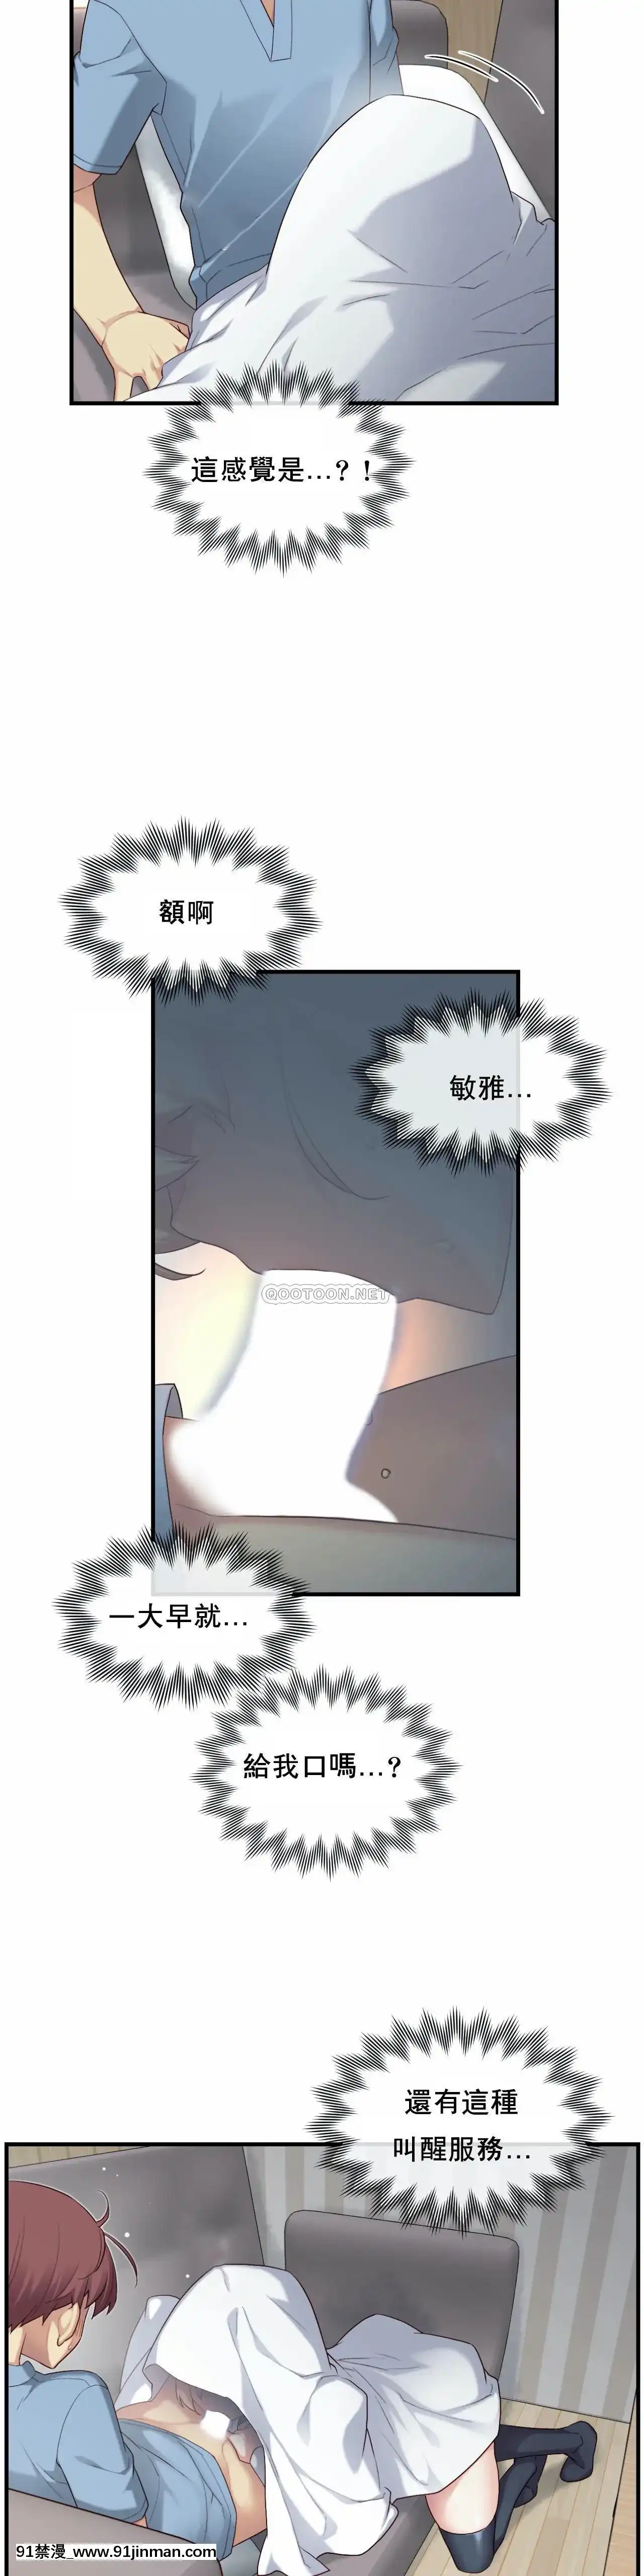 【hentai quai vat】1╱6女友1 25話   1/6 Bạn Gái 1 Chương 25